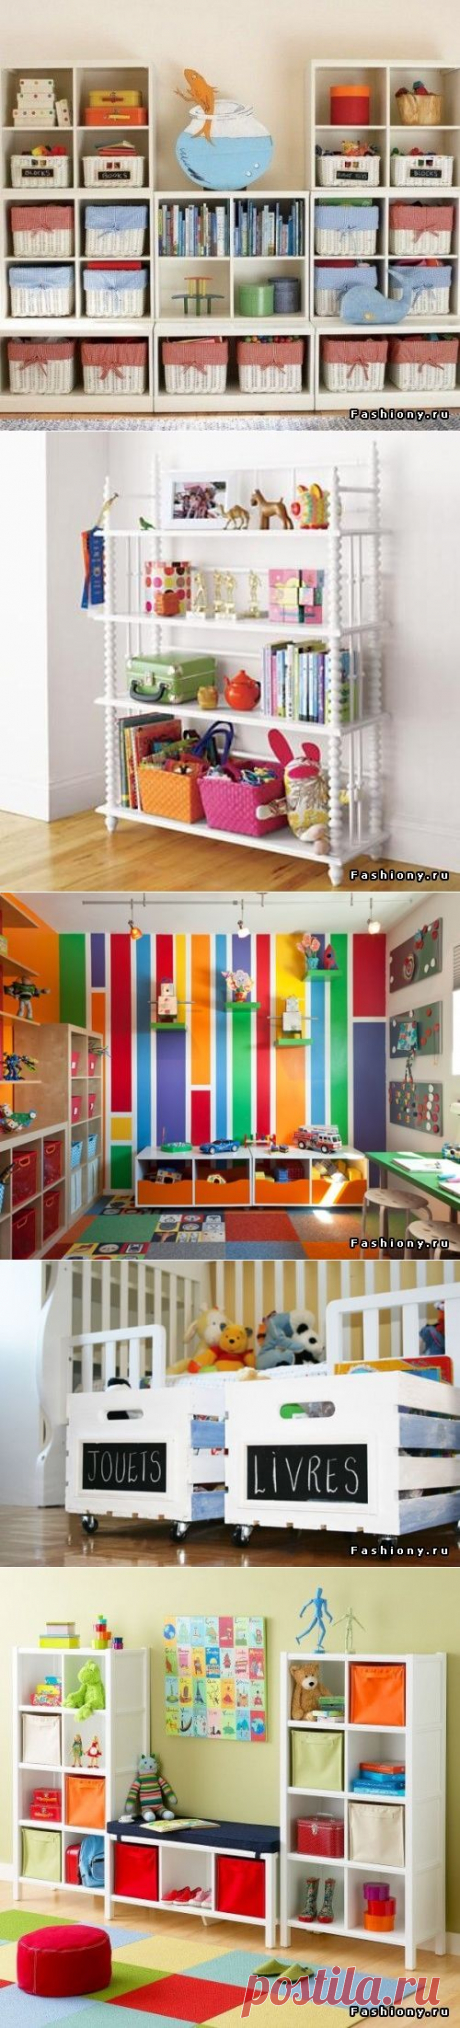 Идеи организации пространства для детской комнаты. Часть 1